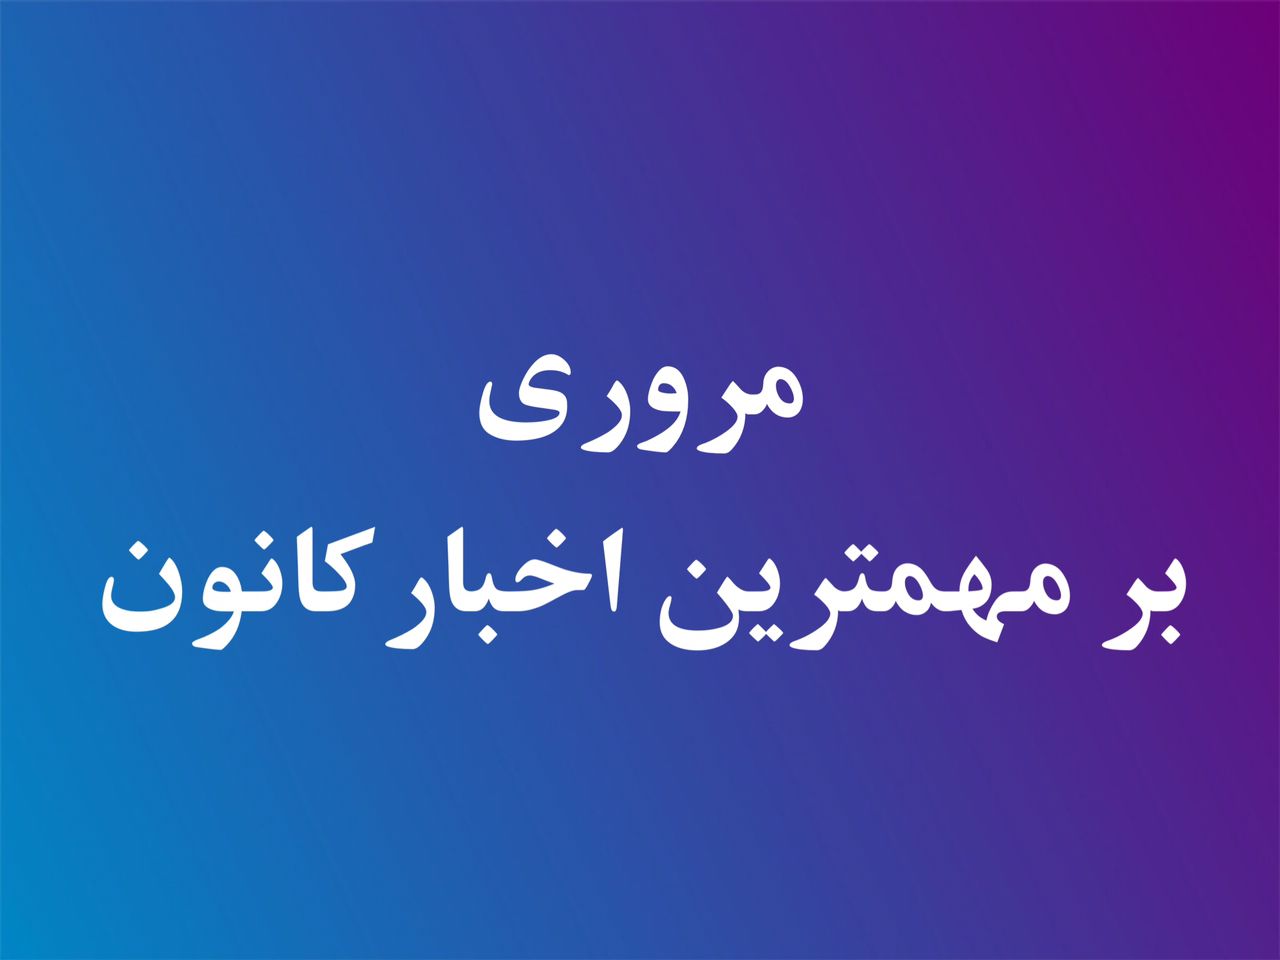 مروری بر اخبار کانون وکلای اصفهان در هفته گذشته